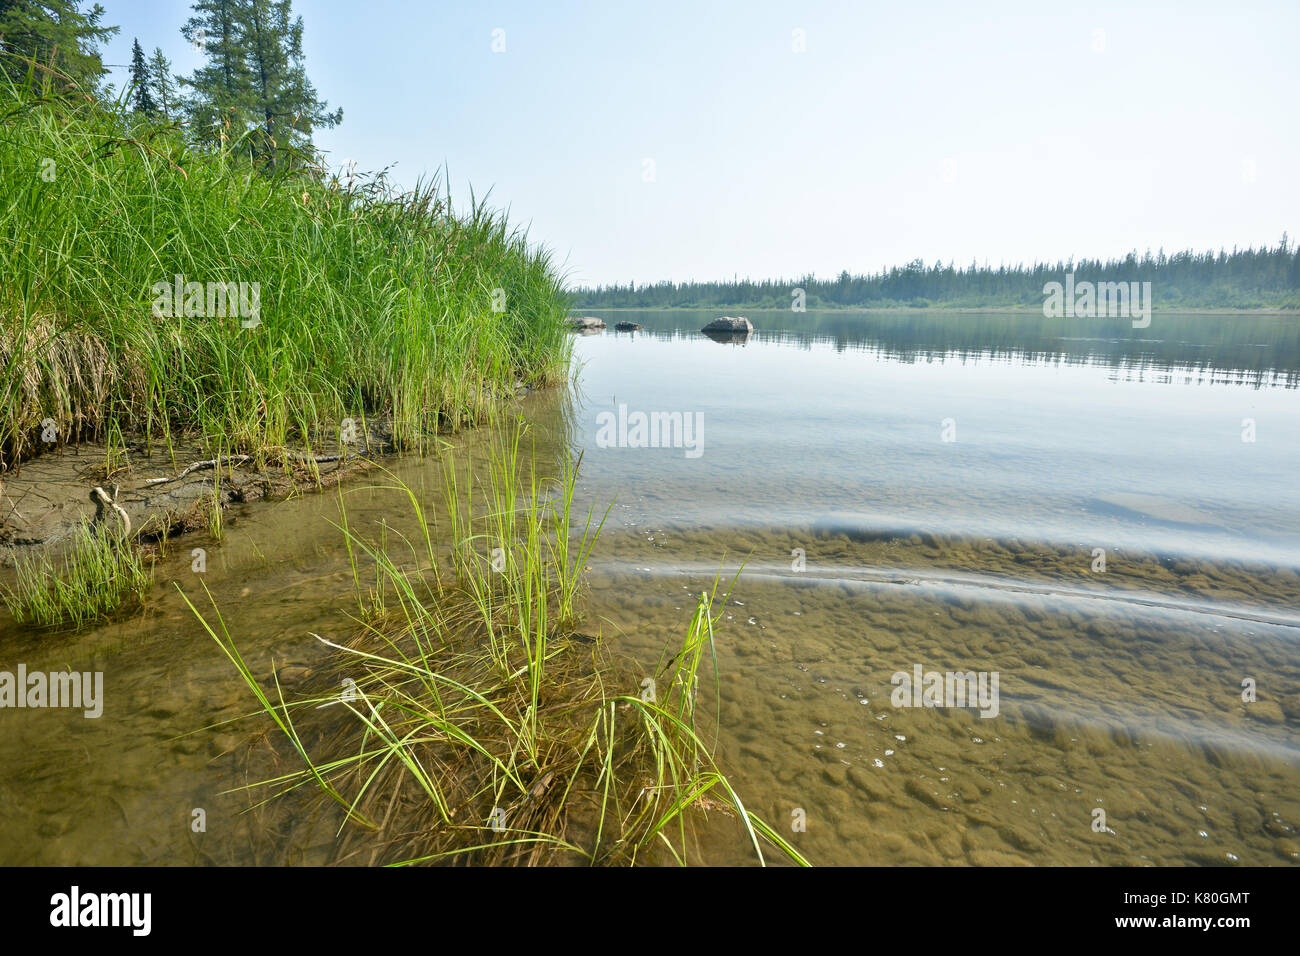 Der Fluss der polaren Ural. Sommer Wasser Landschaft im Norden Russlands. Stockfoto